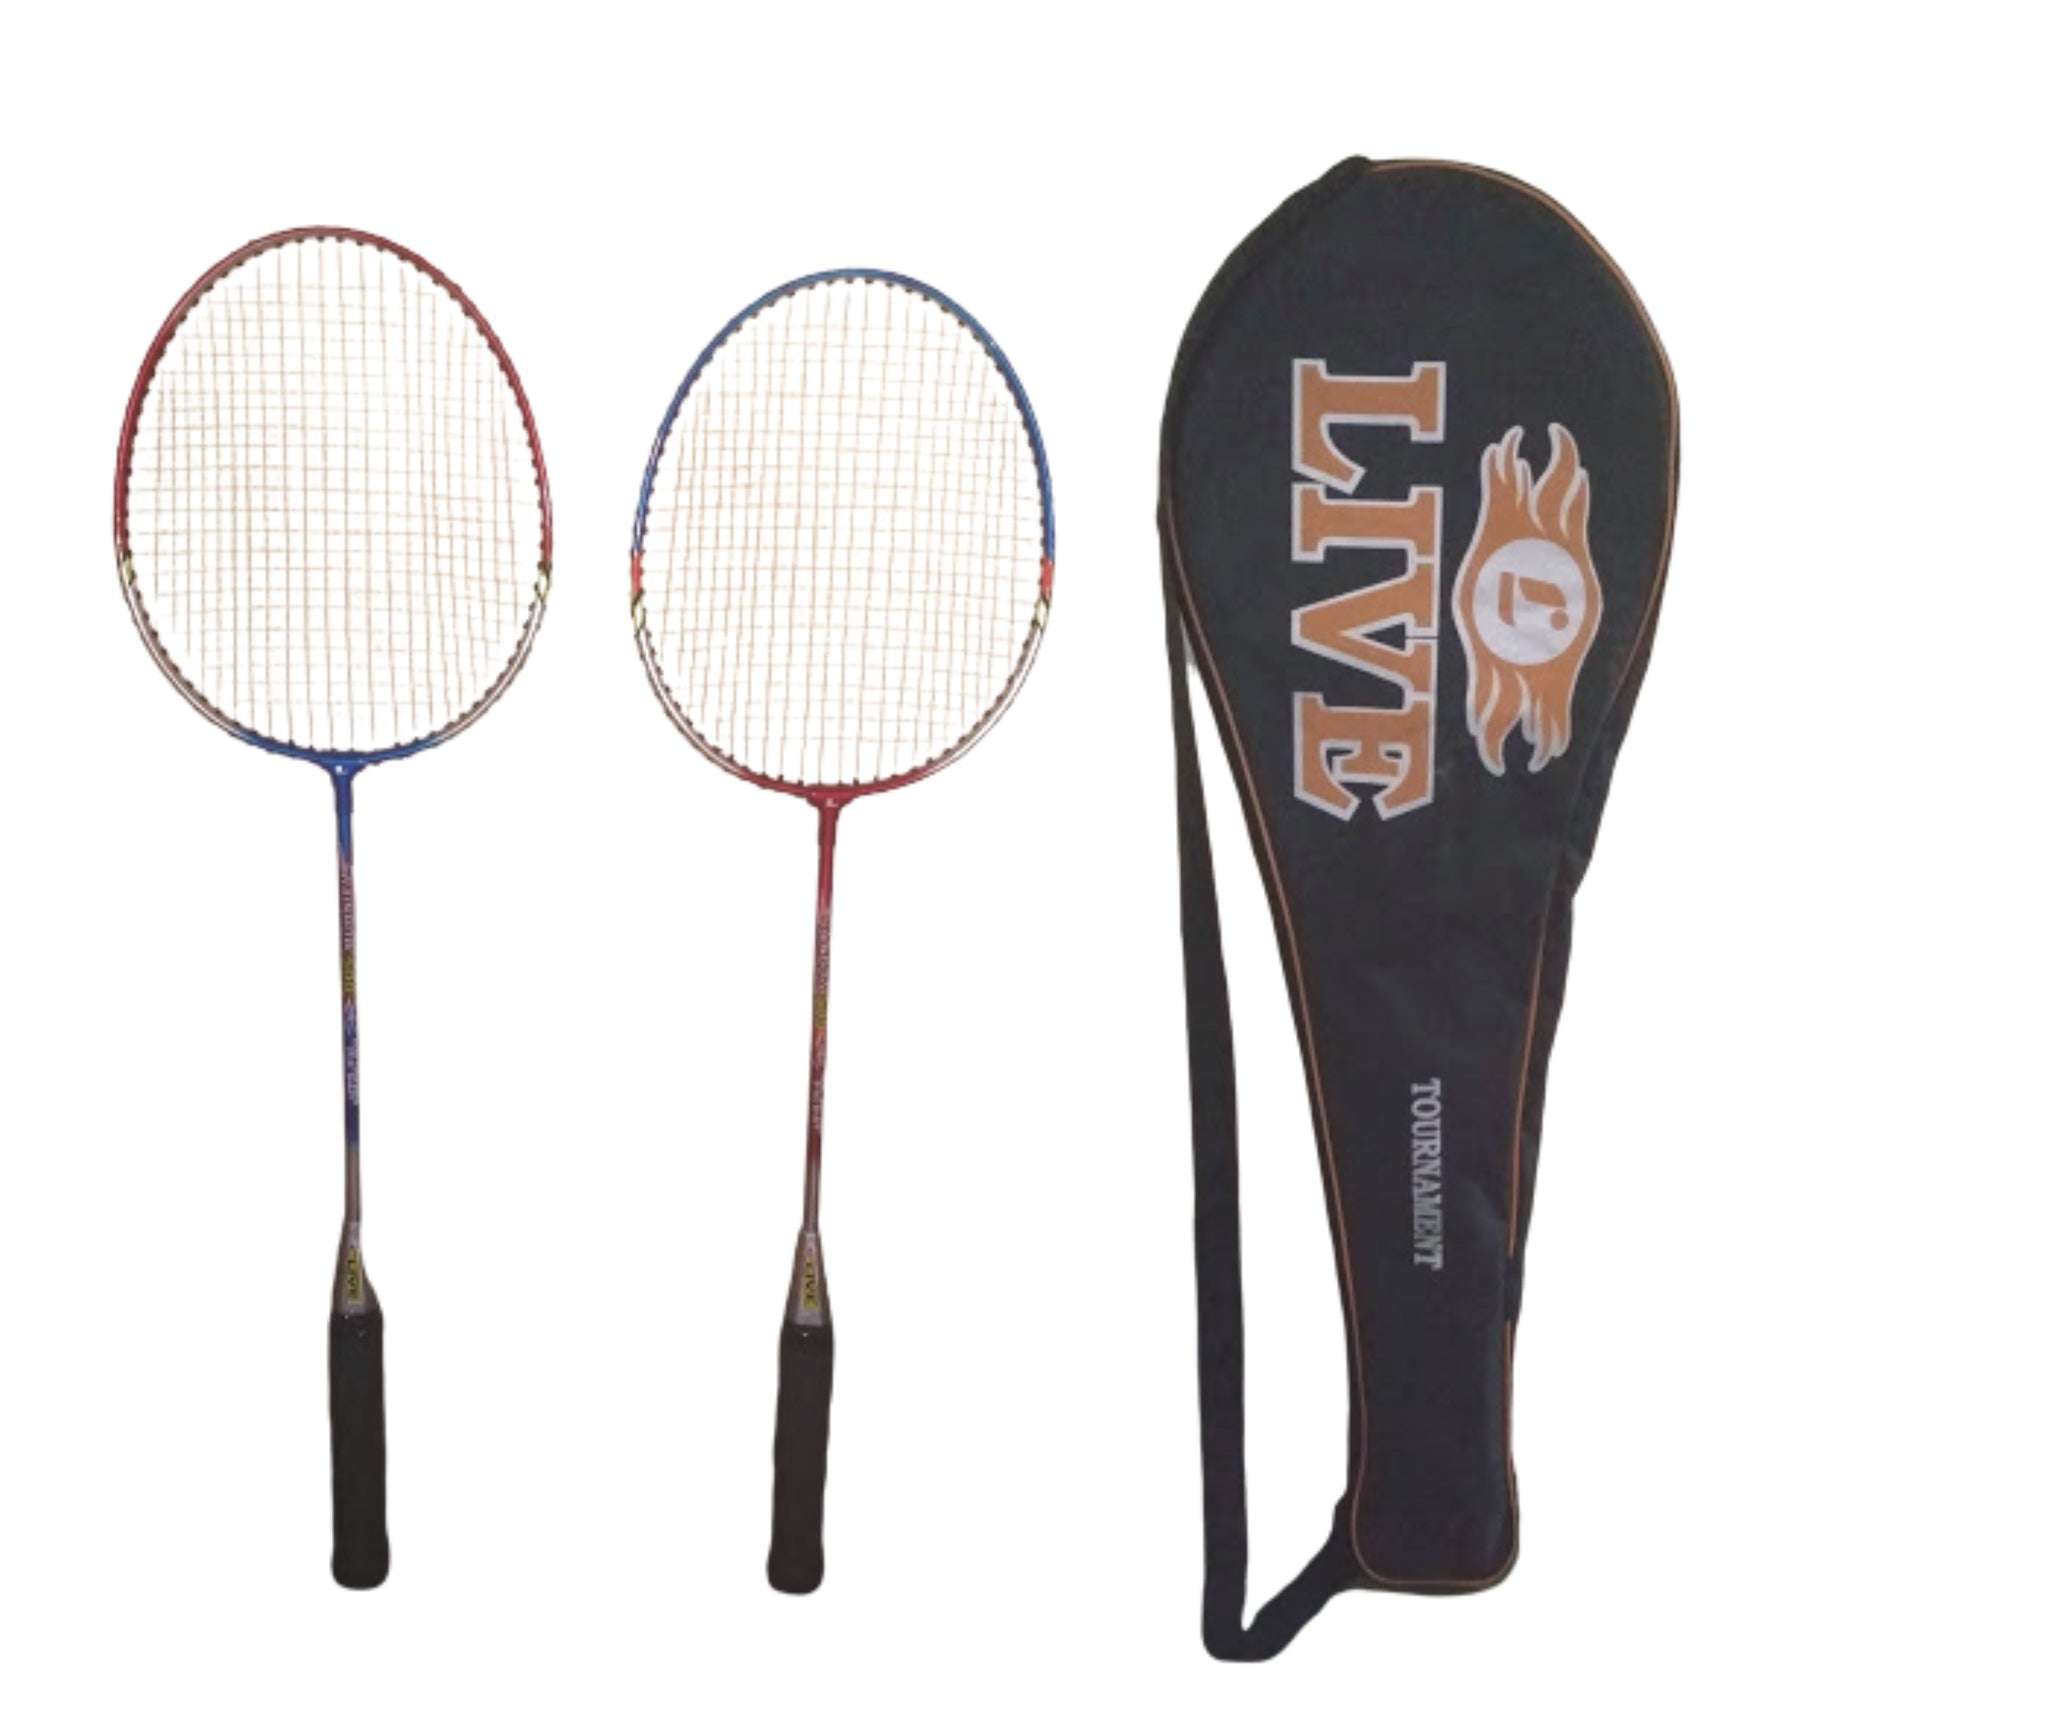 Live Steel Shaft Badminton Racket pair (Pack of 2) sppartos